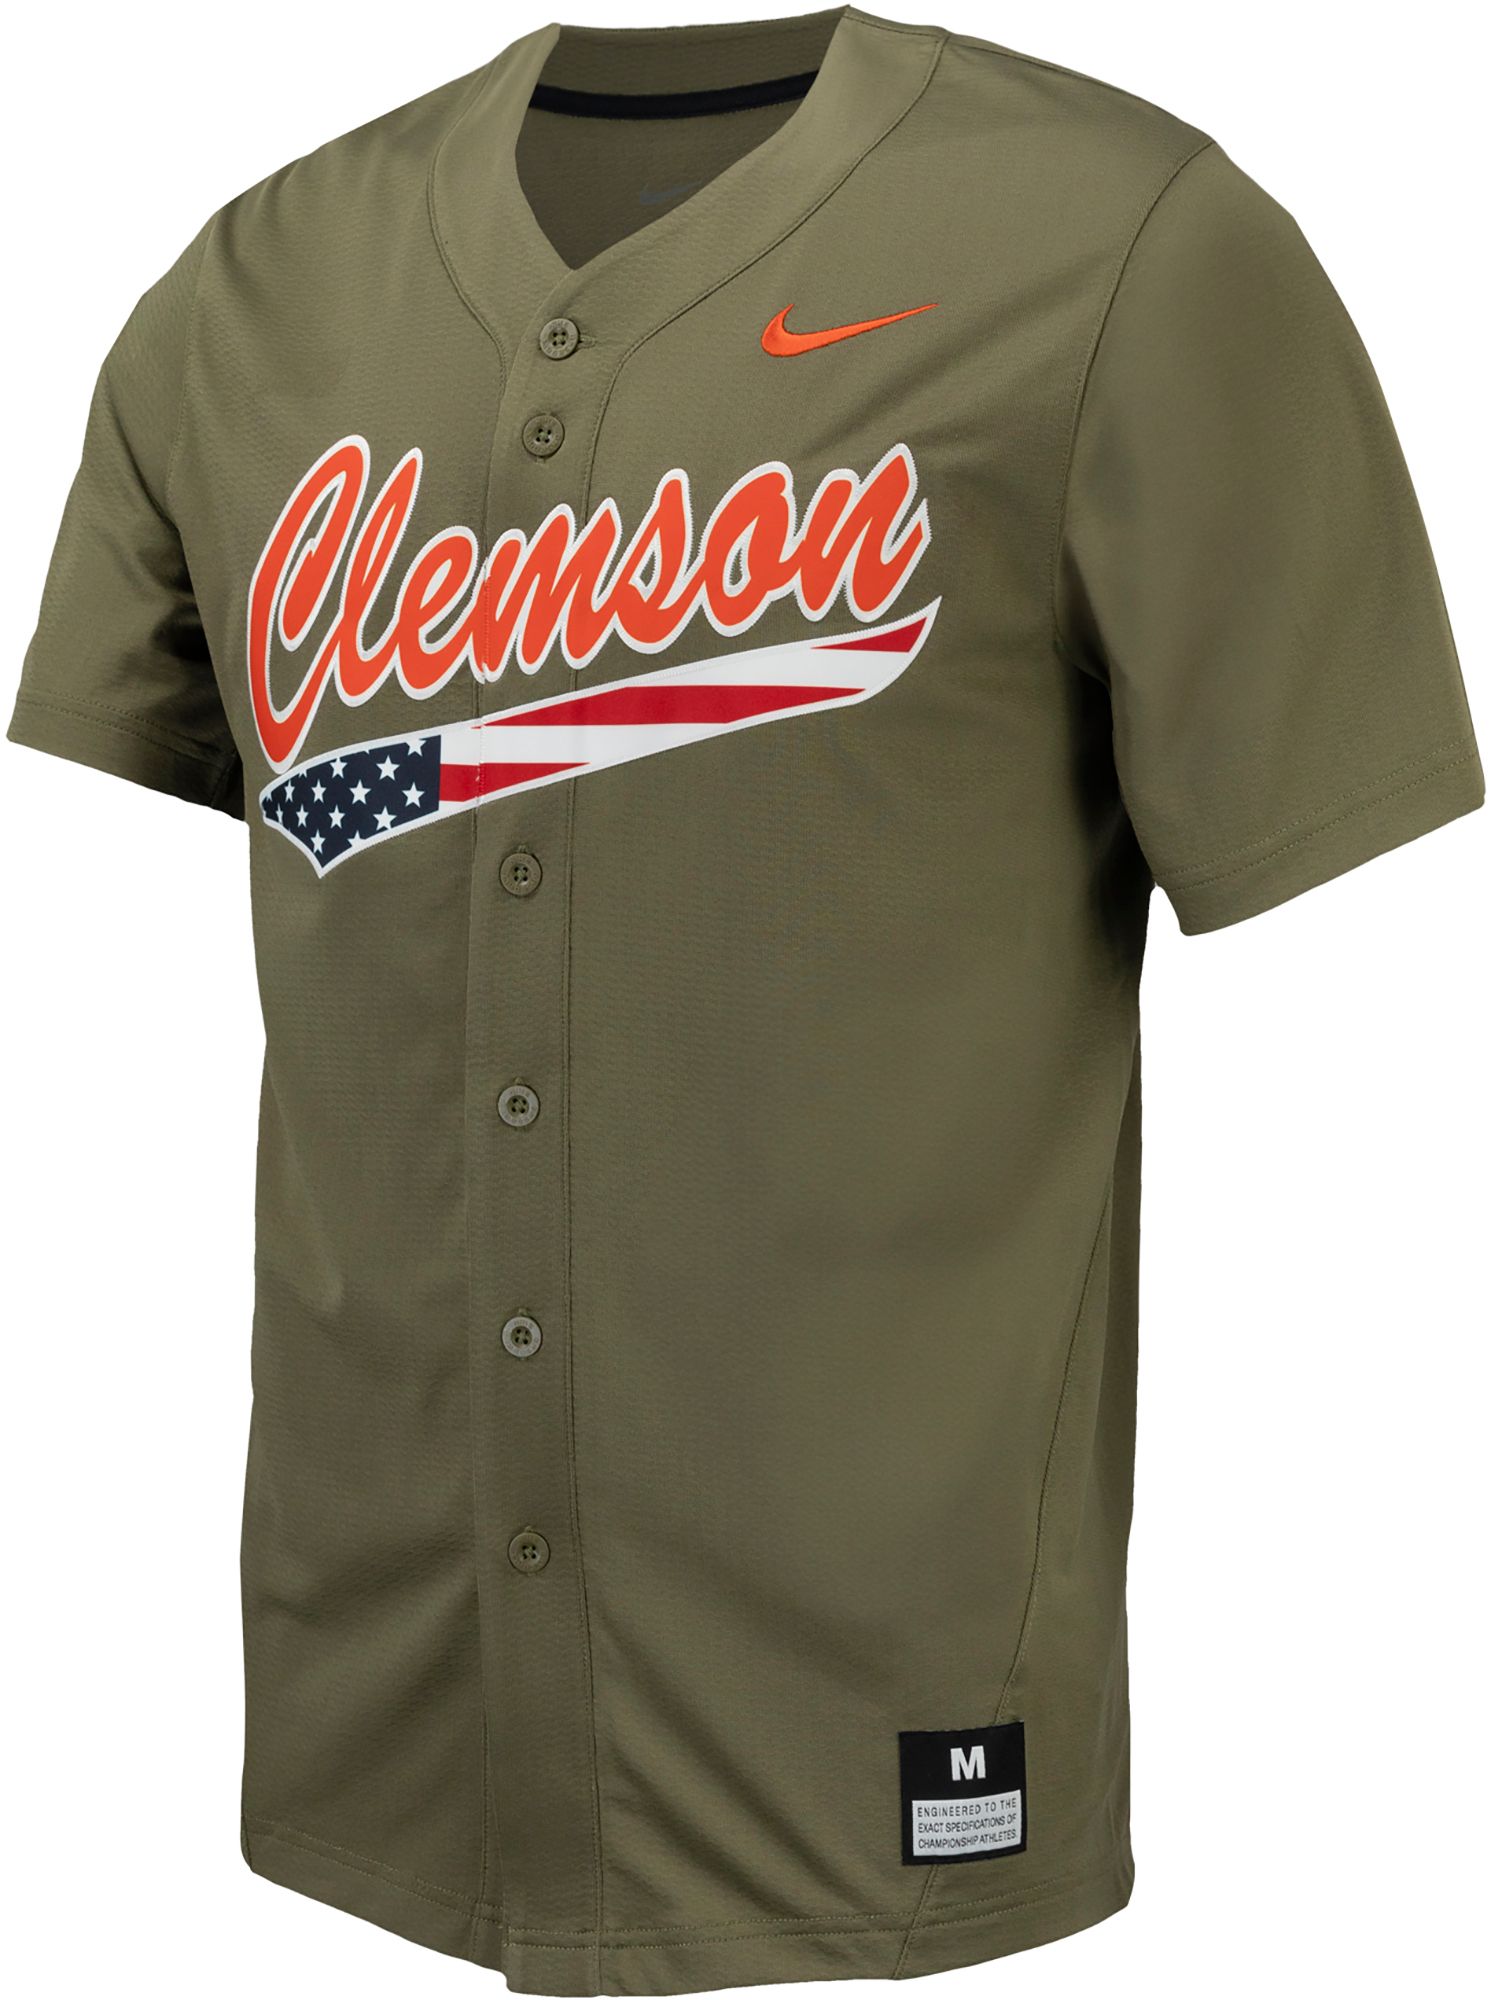 Clemson Tigers baseball legends jersey